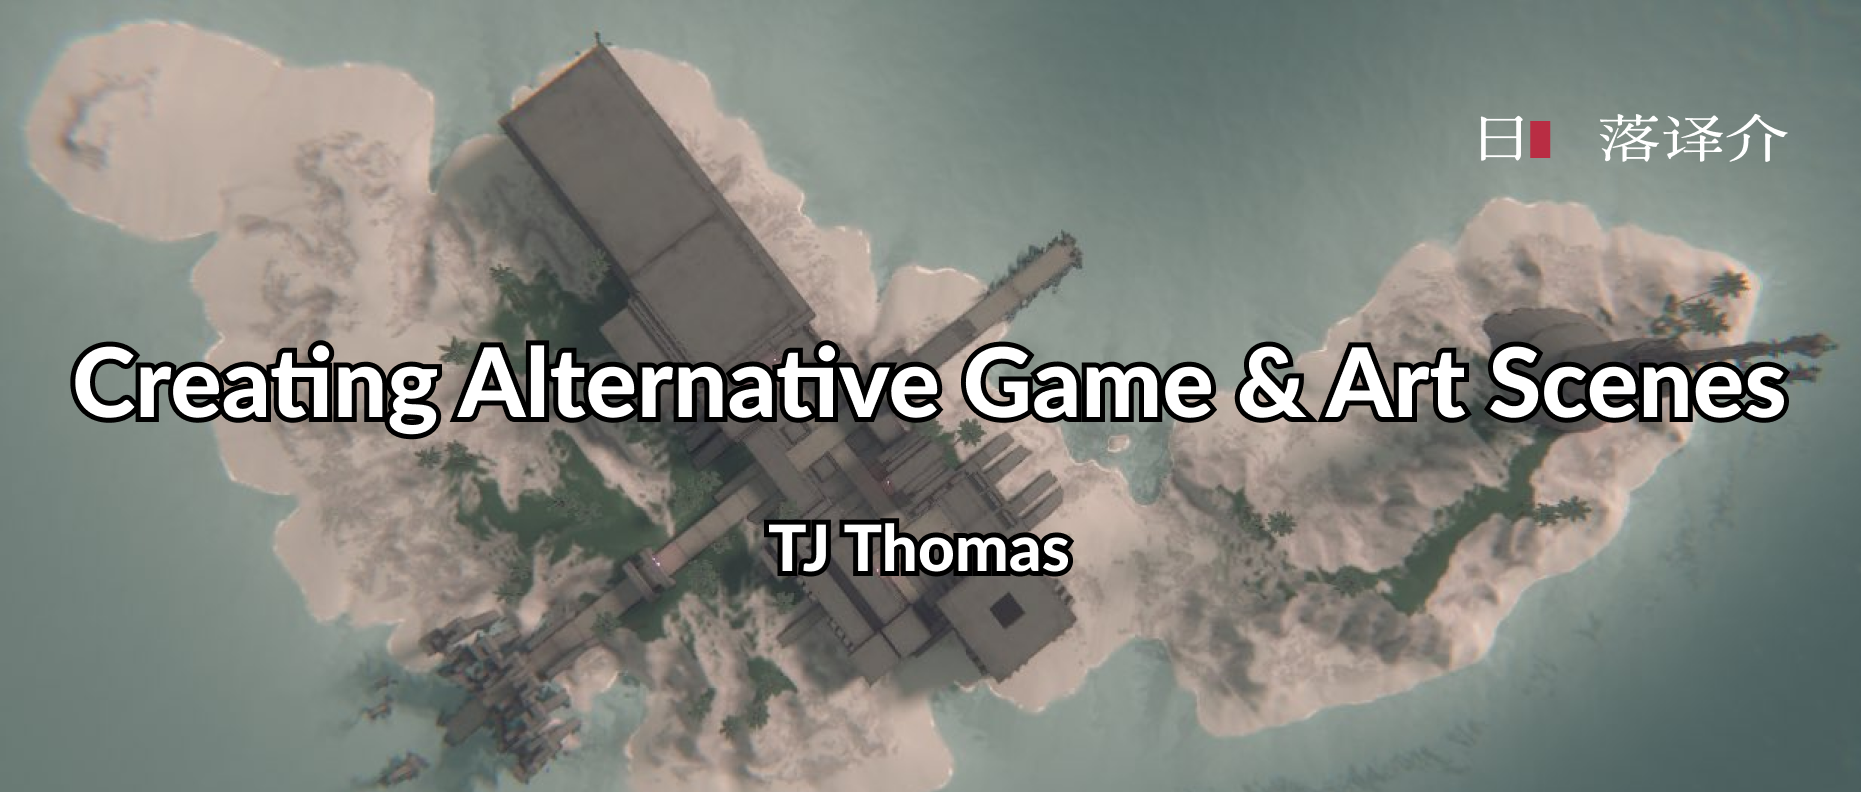 譯介丨TJ Thomas：創造另類遊戲與藝術場景(2015)